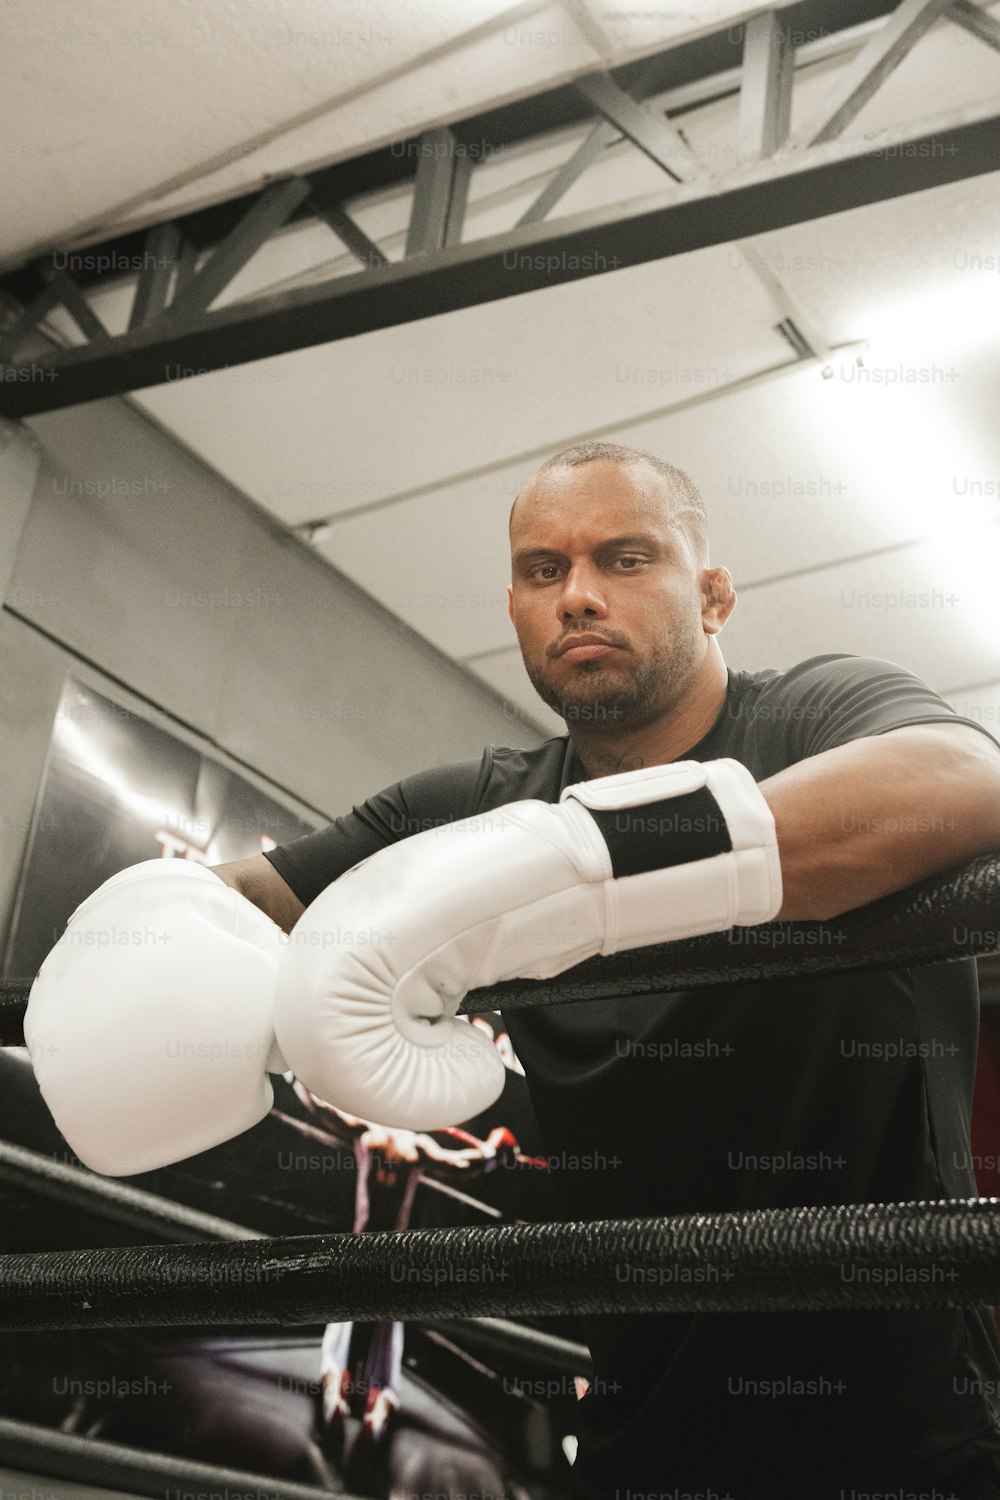 Un hombre parado en un ring de boxeo sosteniendo un guante blanco